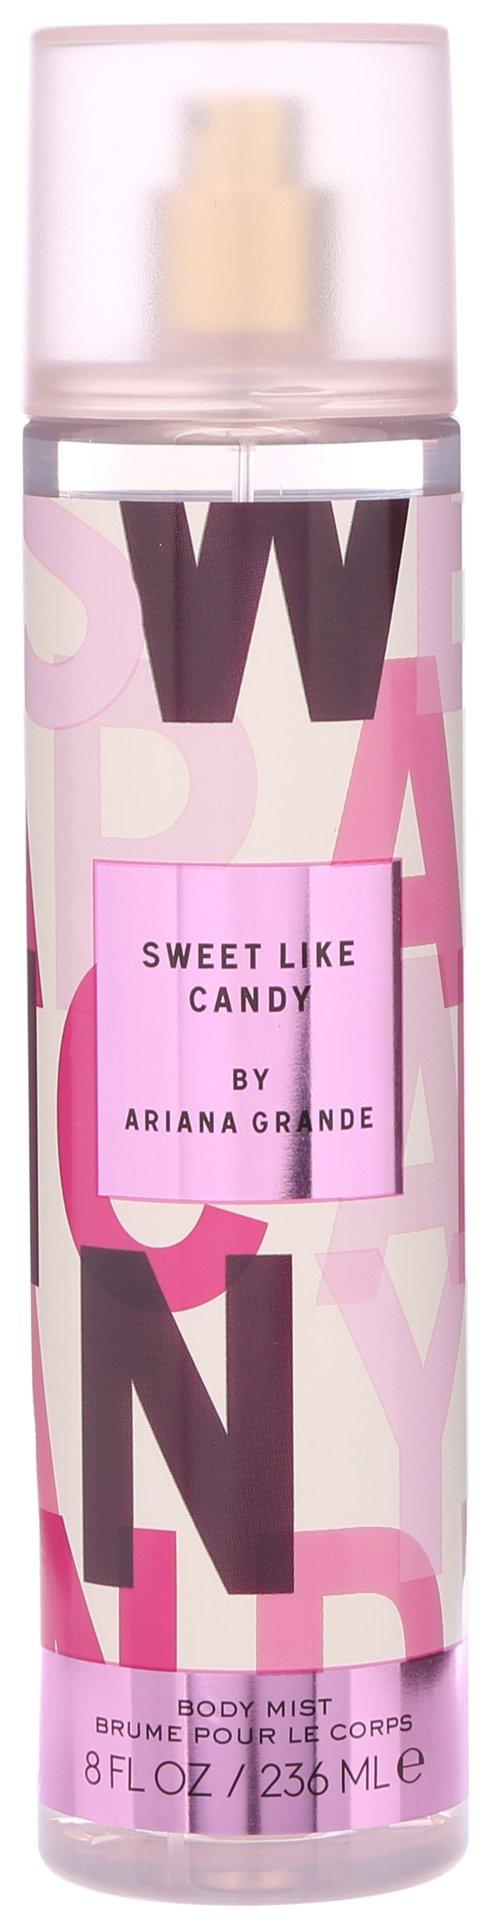 Ariana Grande Sweet Like Candy 8 Fl.Oz. Body